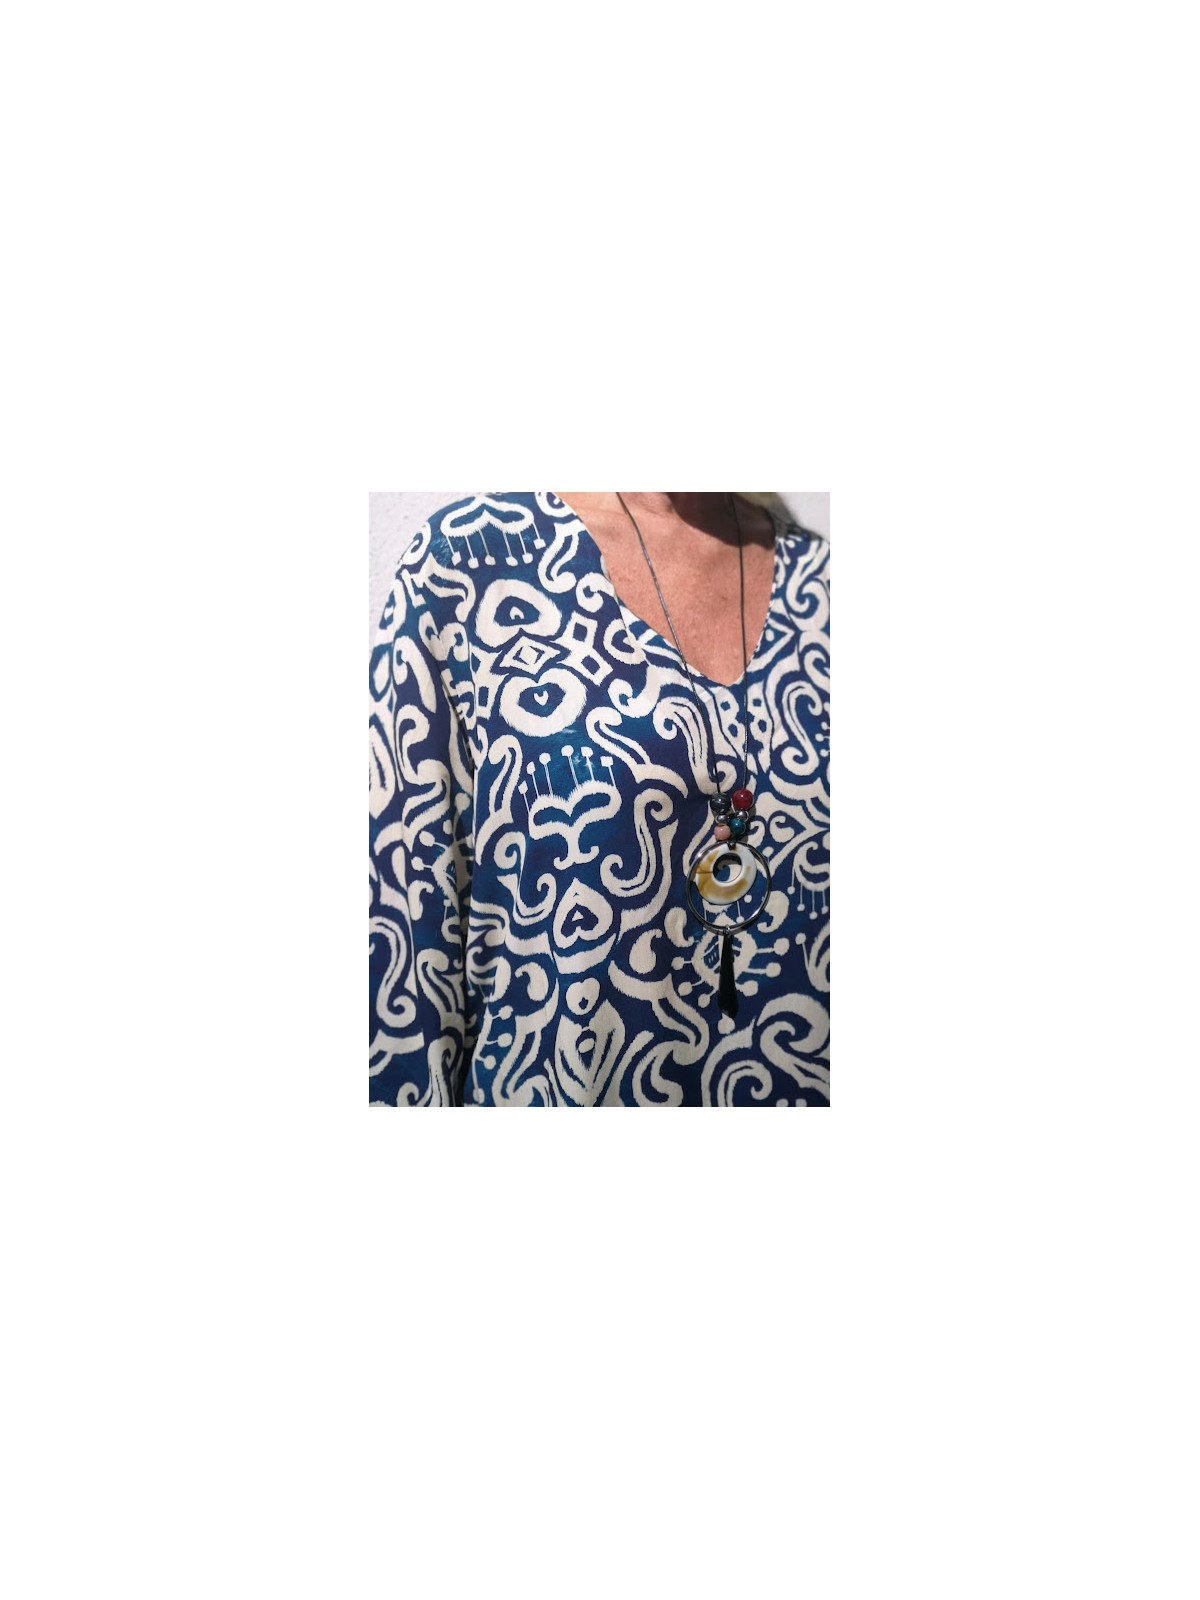 Robe fluide bleue nuit et creme fabrication italie | 3 vue rapprochee motifs | Tilleulmenthe boutique de mode femme en ligne